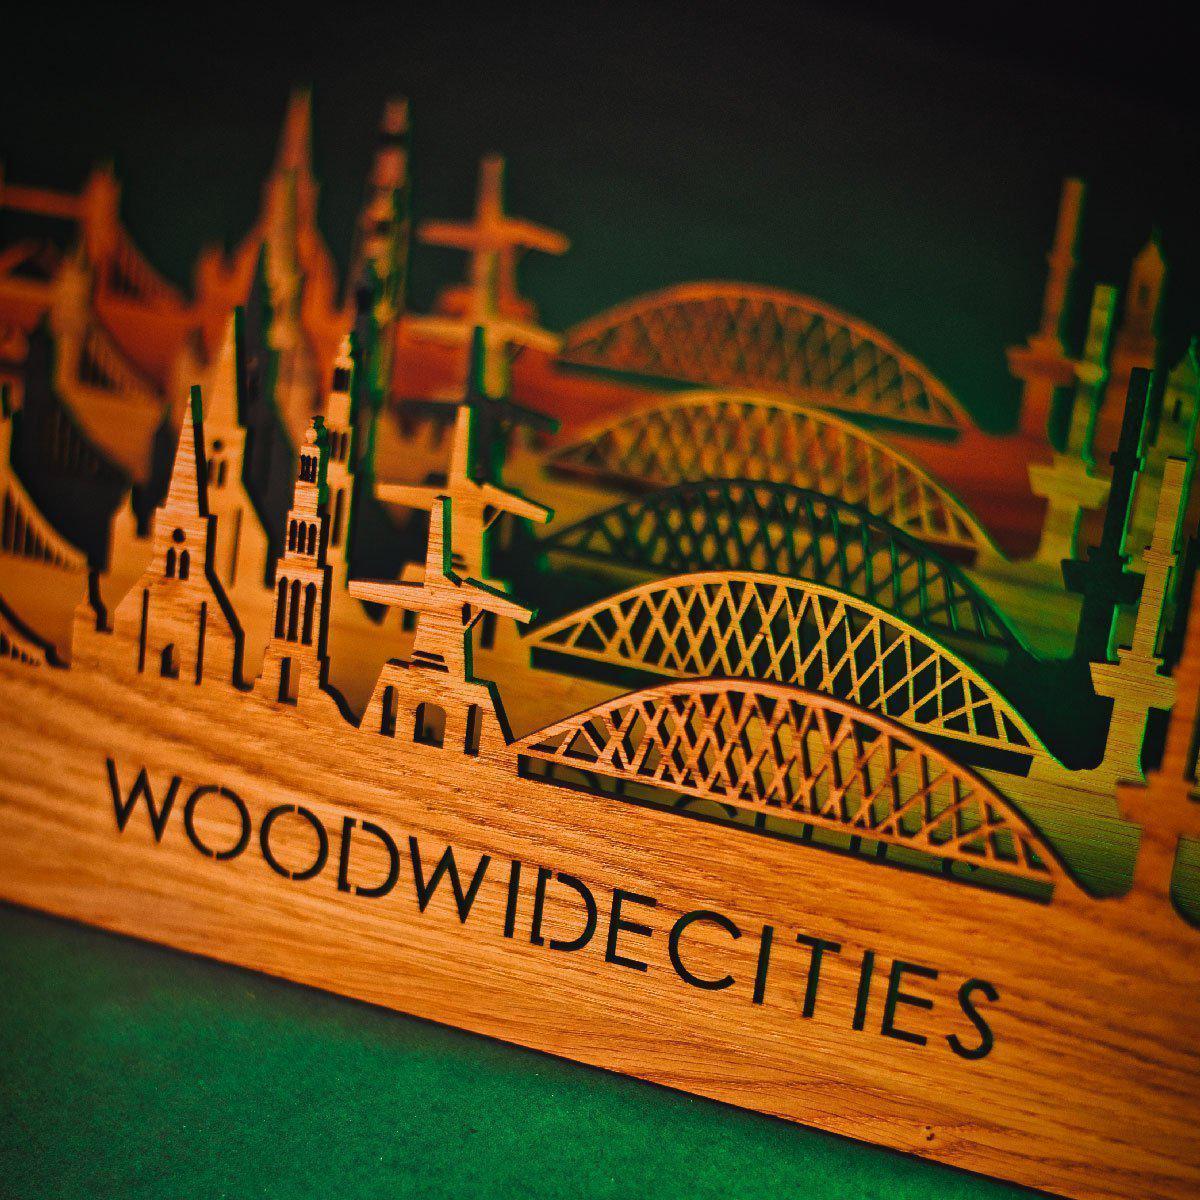 Skyline Klok Nijmegen Palissander houten cadeau wanddecoratie relatiegeschenk van WoodWideCities